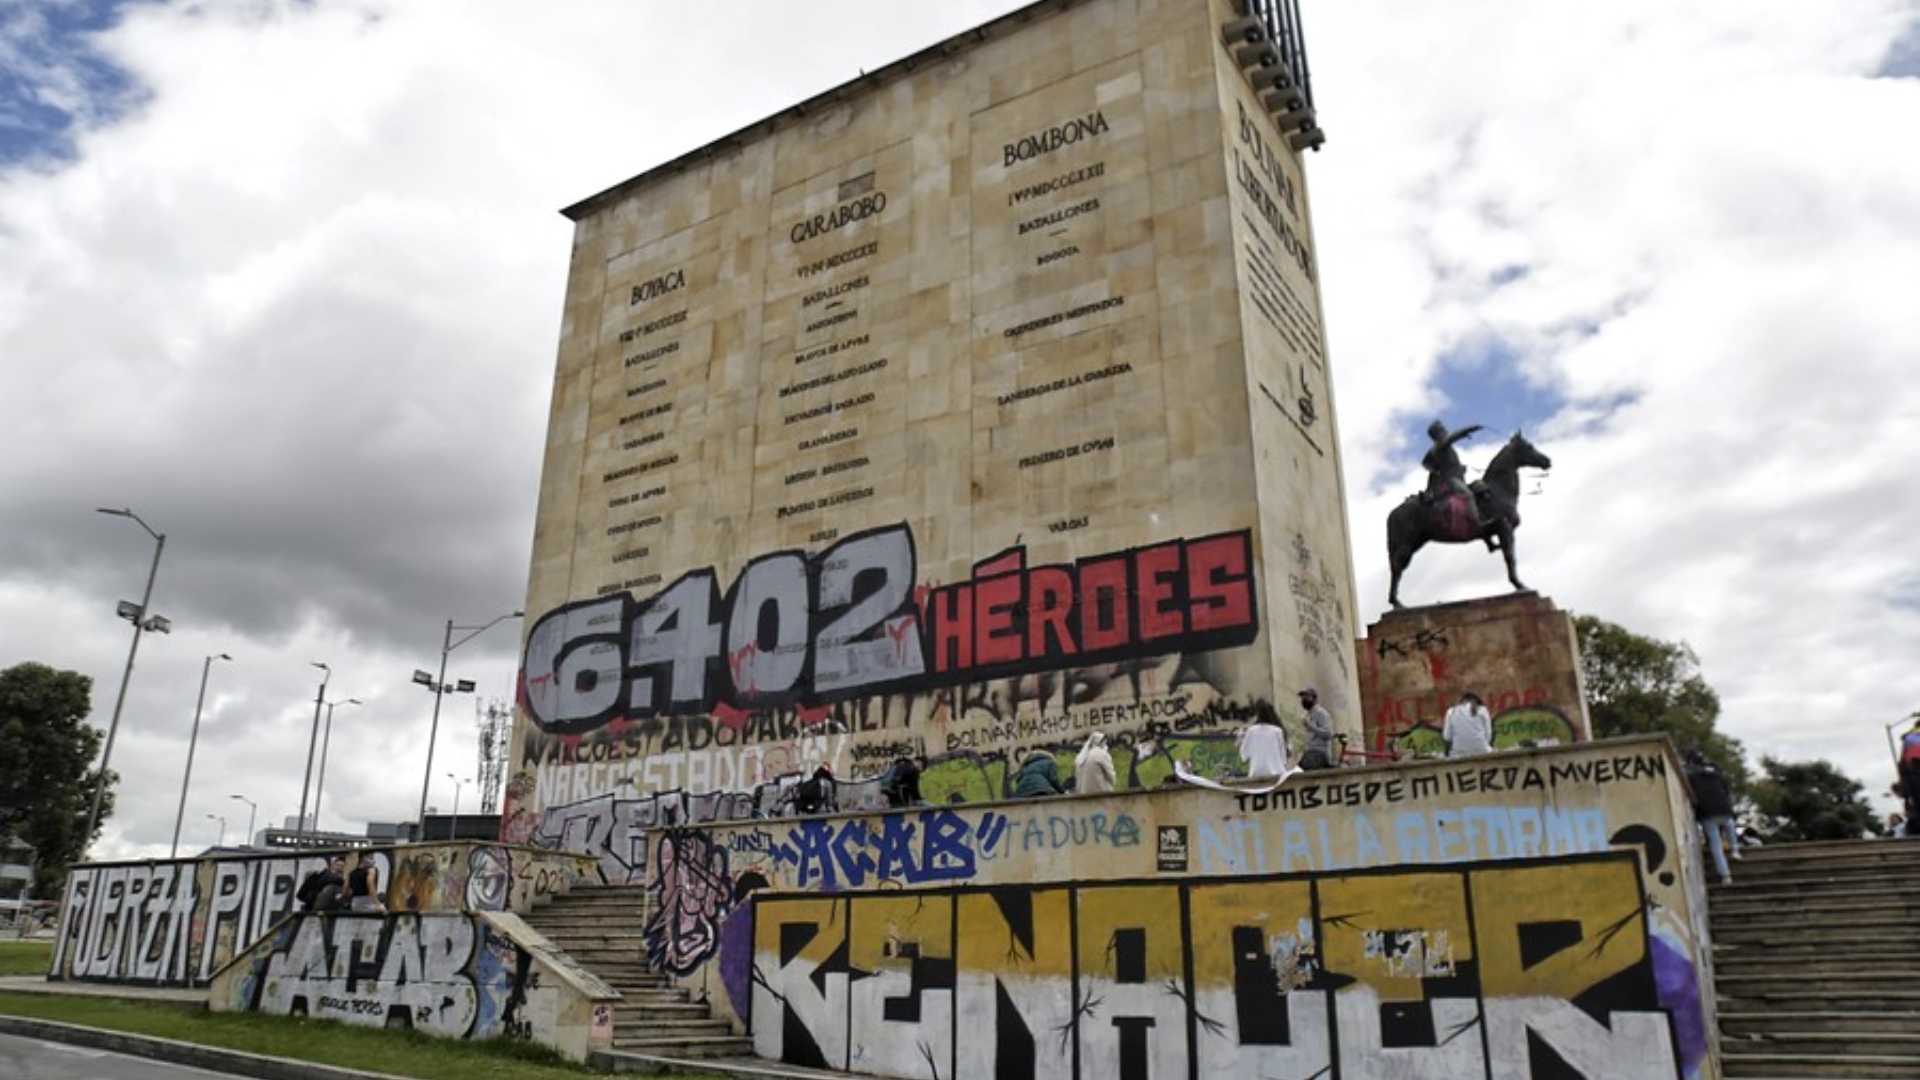 “Nuestros hijos no son héroes”: molestia de Mafapo por mural que hicieron manifestantes en Bogotá